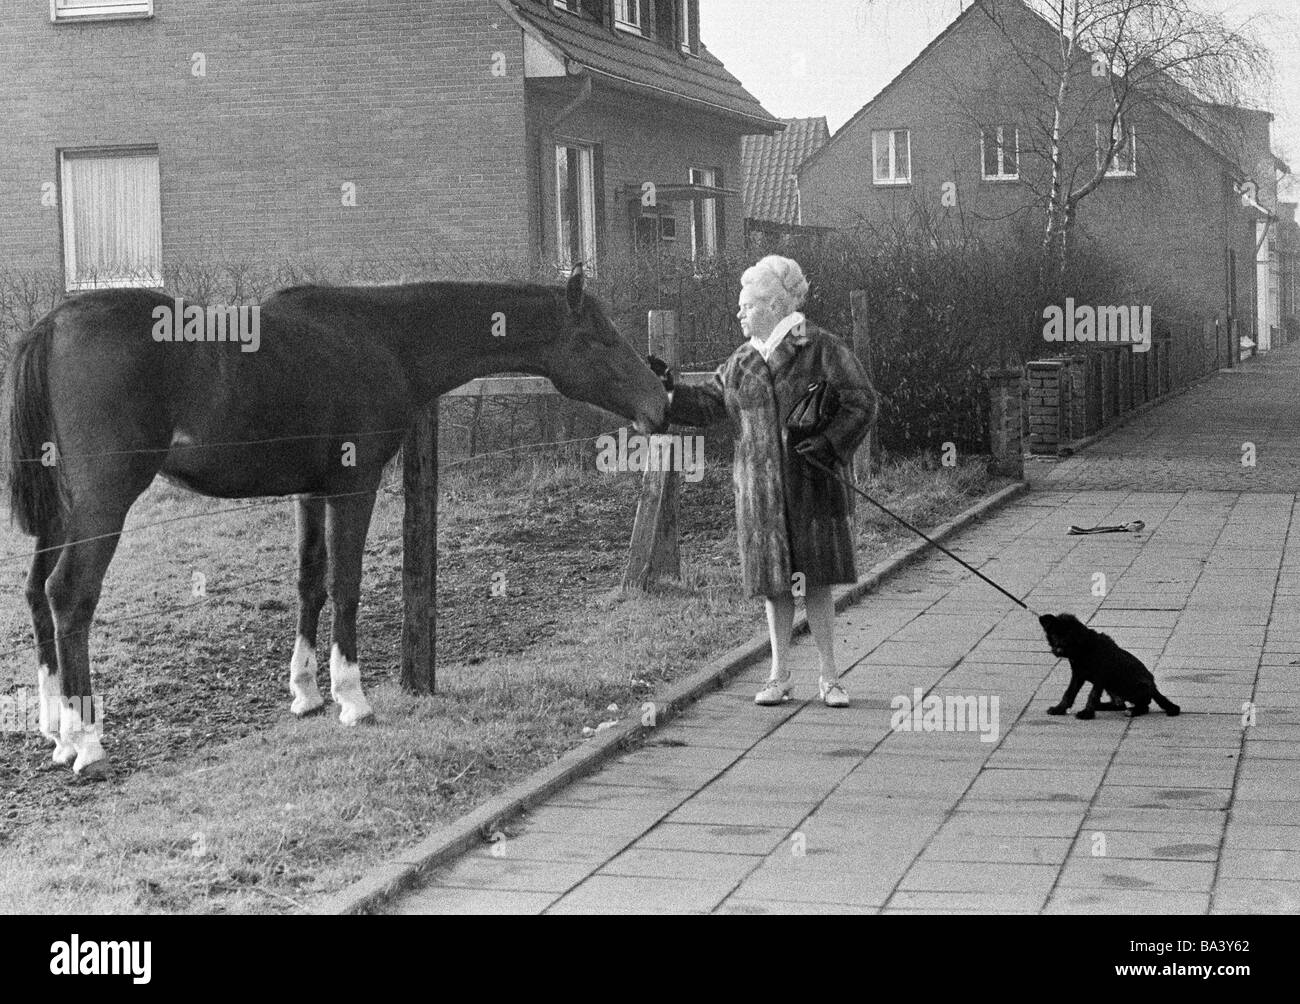 Negli anni settanta, foto in bianco e nero, umorismo, animali, donna cammina un cane al guinzaglio e sorge nei pressi di una recinzione di pascolo petting un cavallo, il cane è molto ansiosi e tira il guinzaglio, di età compresa tra i 50 e i 60 anni Foto Stock